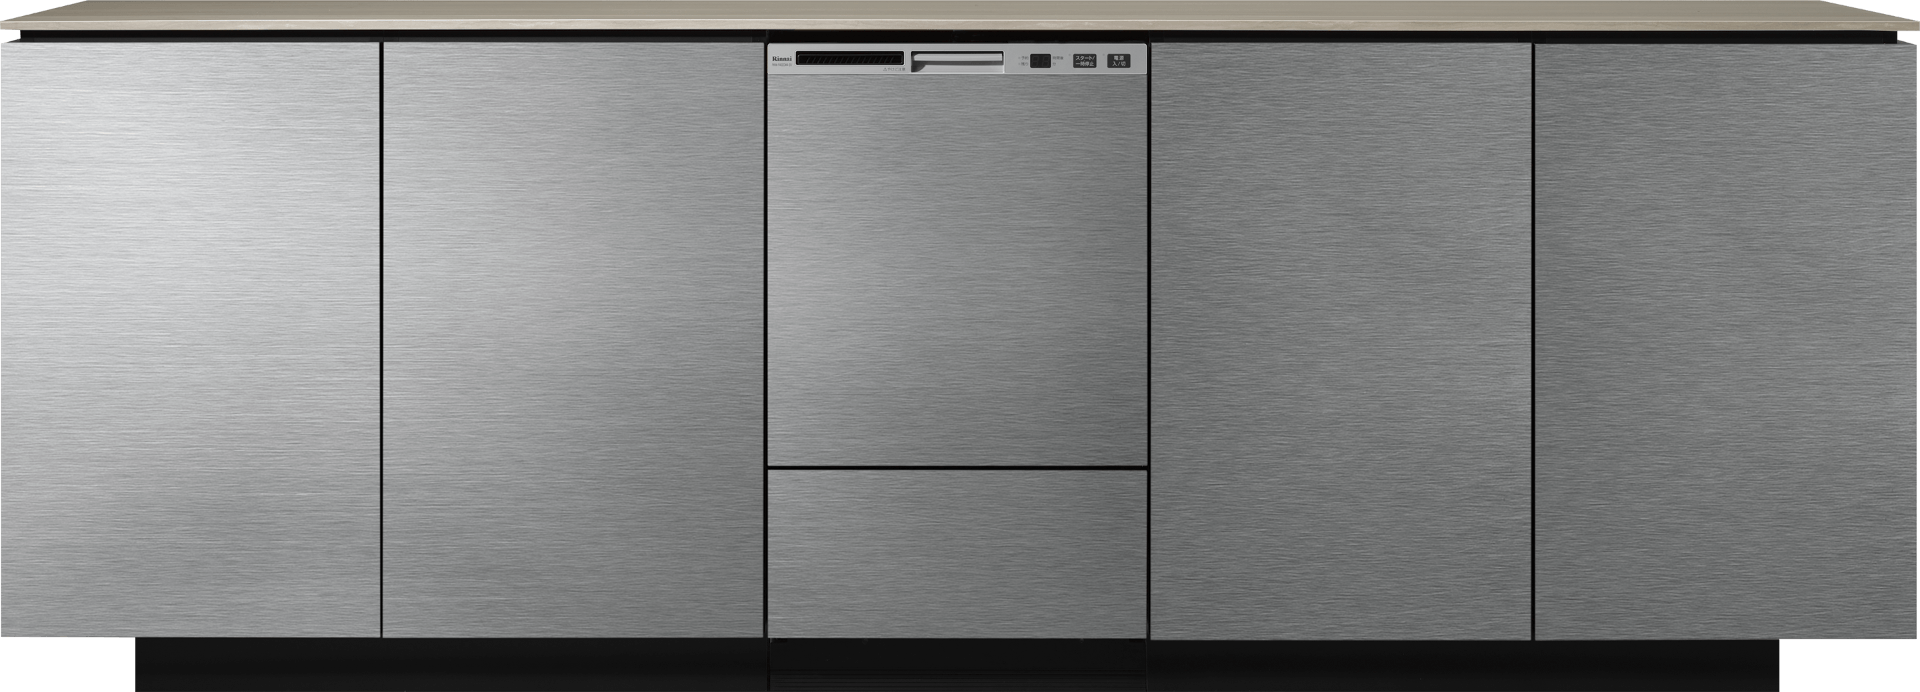 通販店 ﾘﾝﾅｲ 食洗乾燥機(新築用) 深型 :RKW-SD401GP (80-8281)∴∴ 食器洗い乾燥機